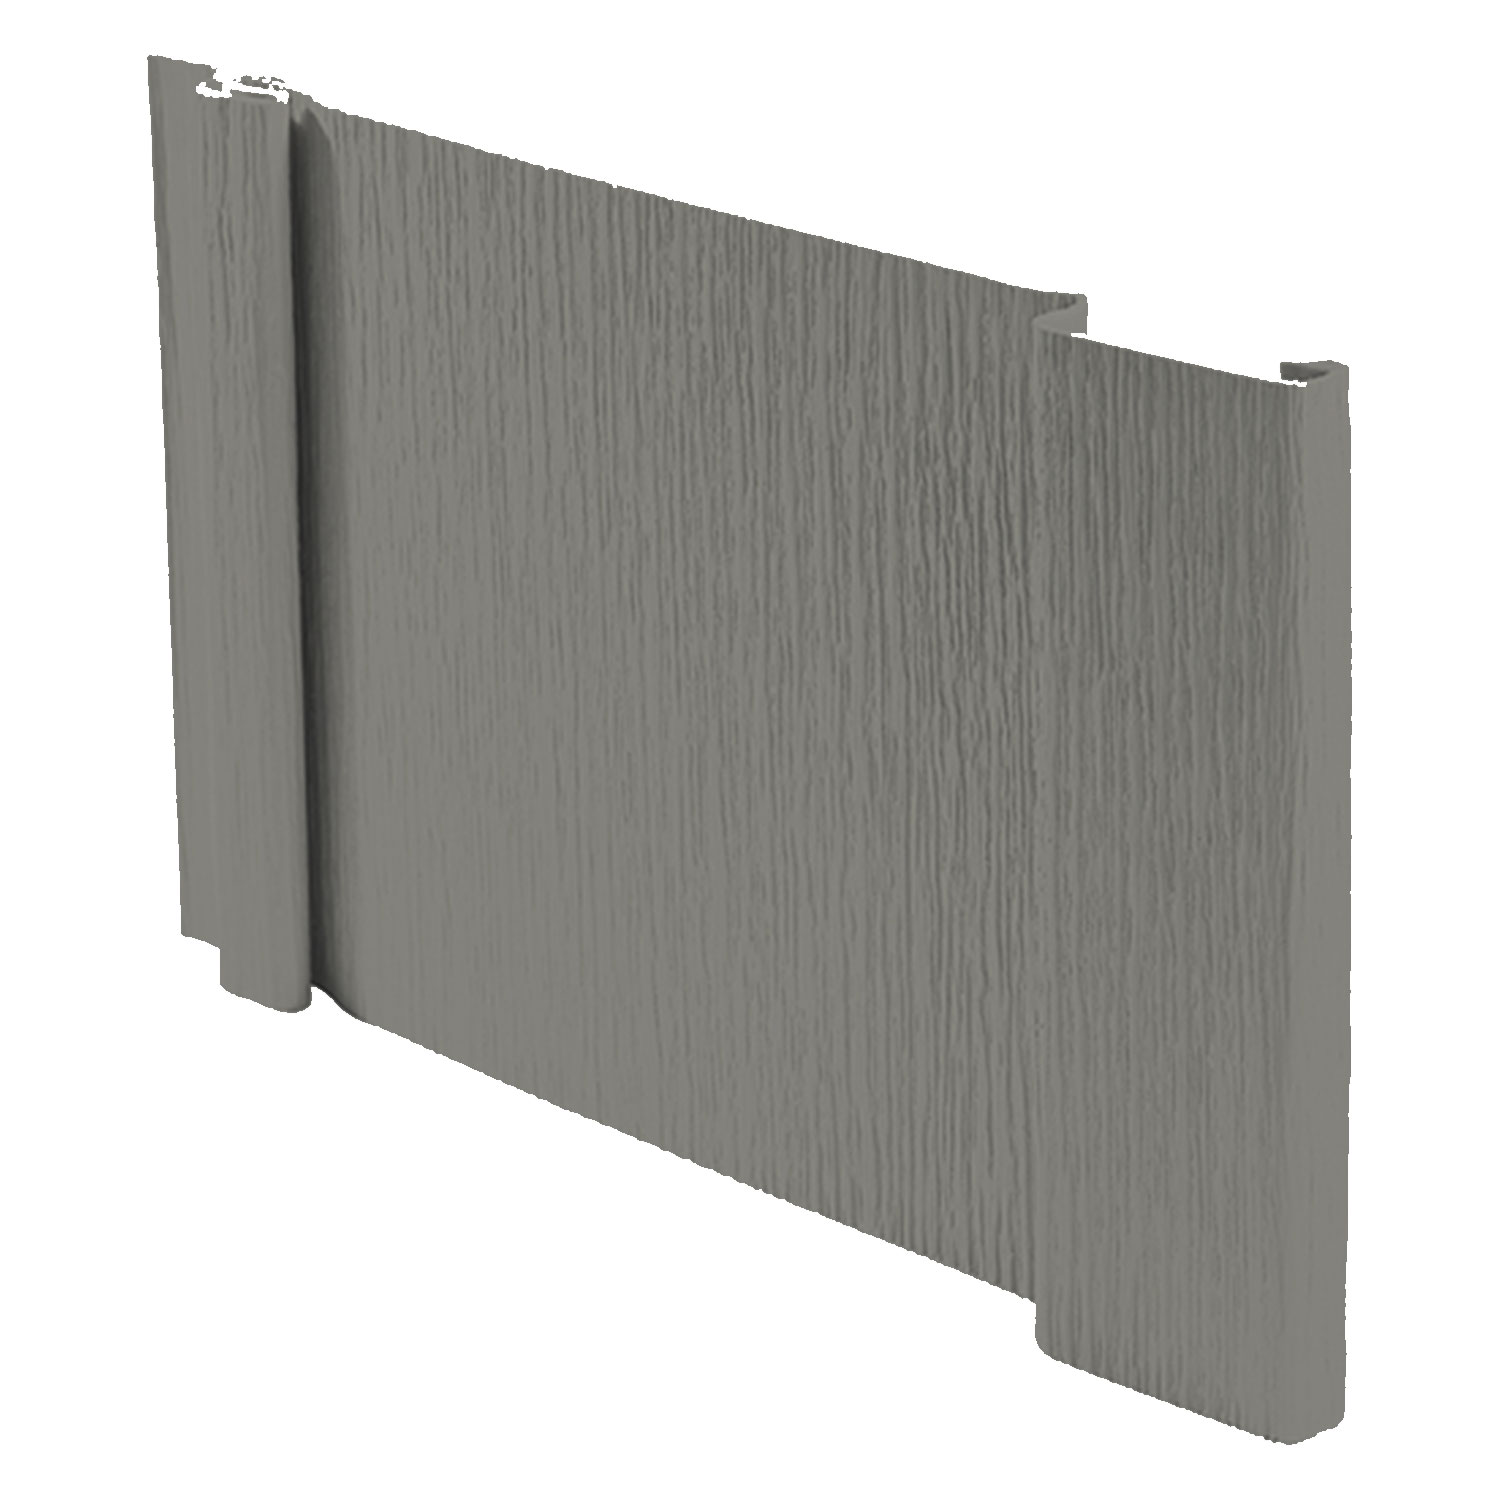 Graphite Grey Board Siding